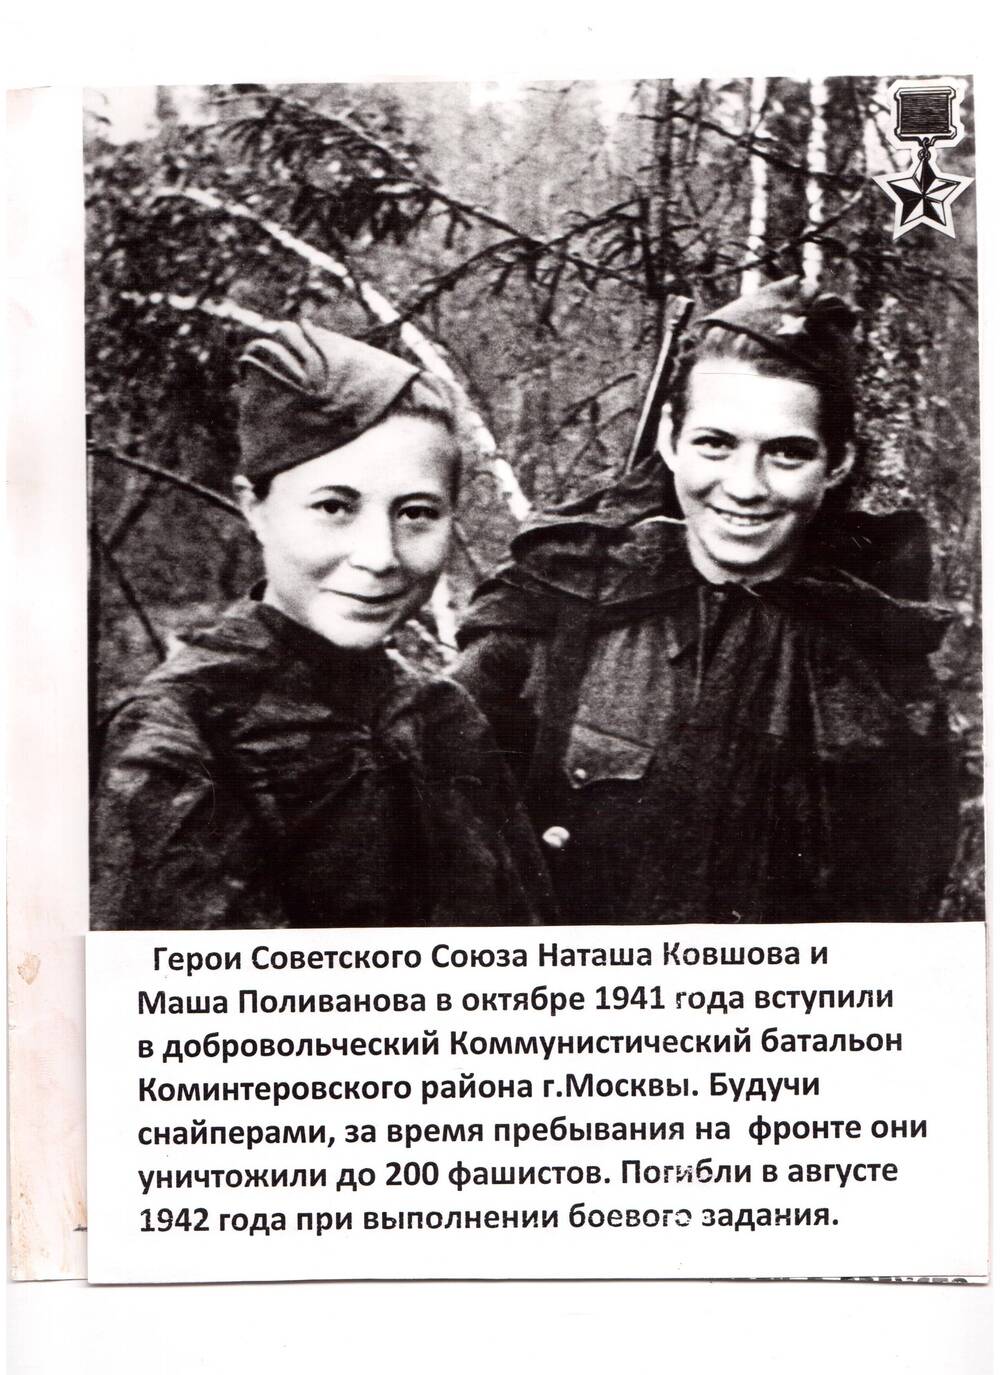 Фотография. Листовка.Н.Ковшова и М.Поливанова, снайперы, герои Советского Союза.